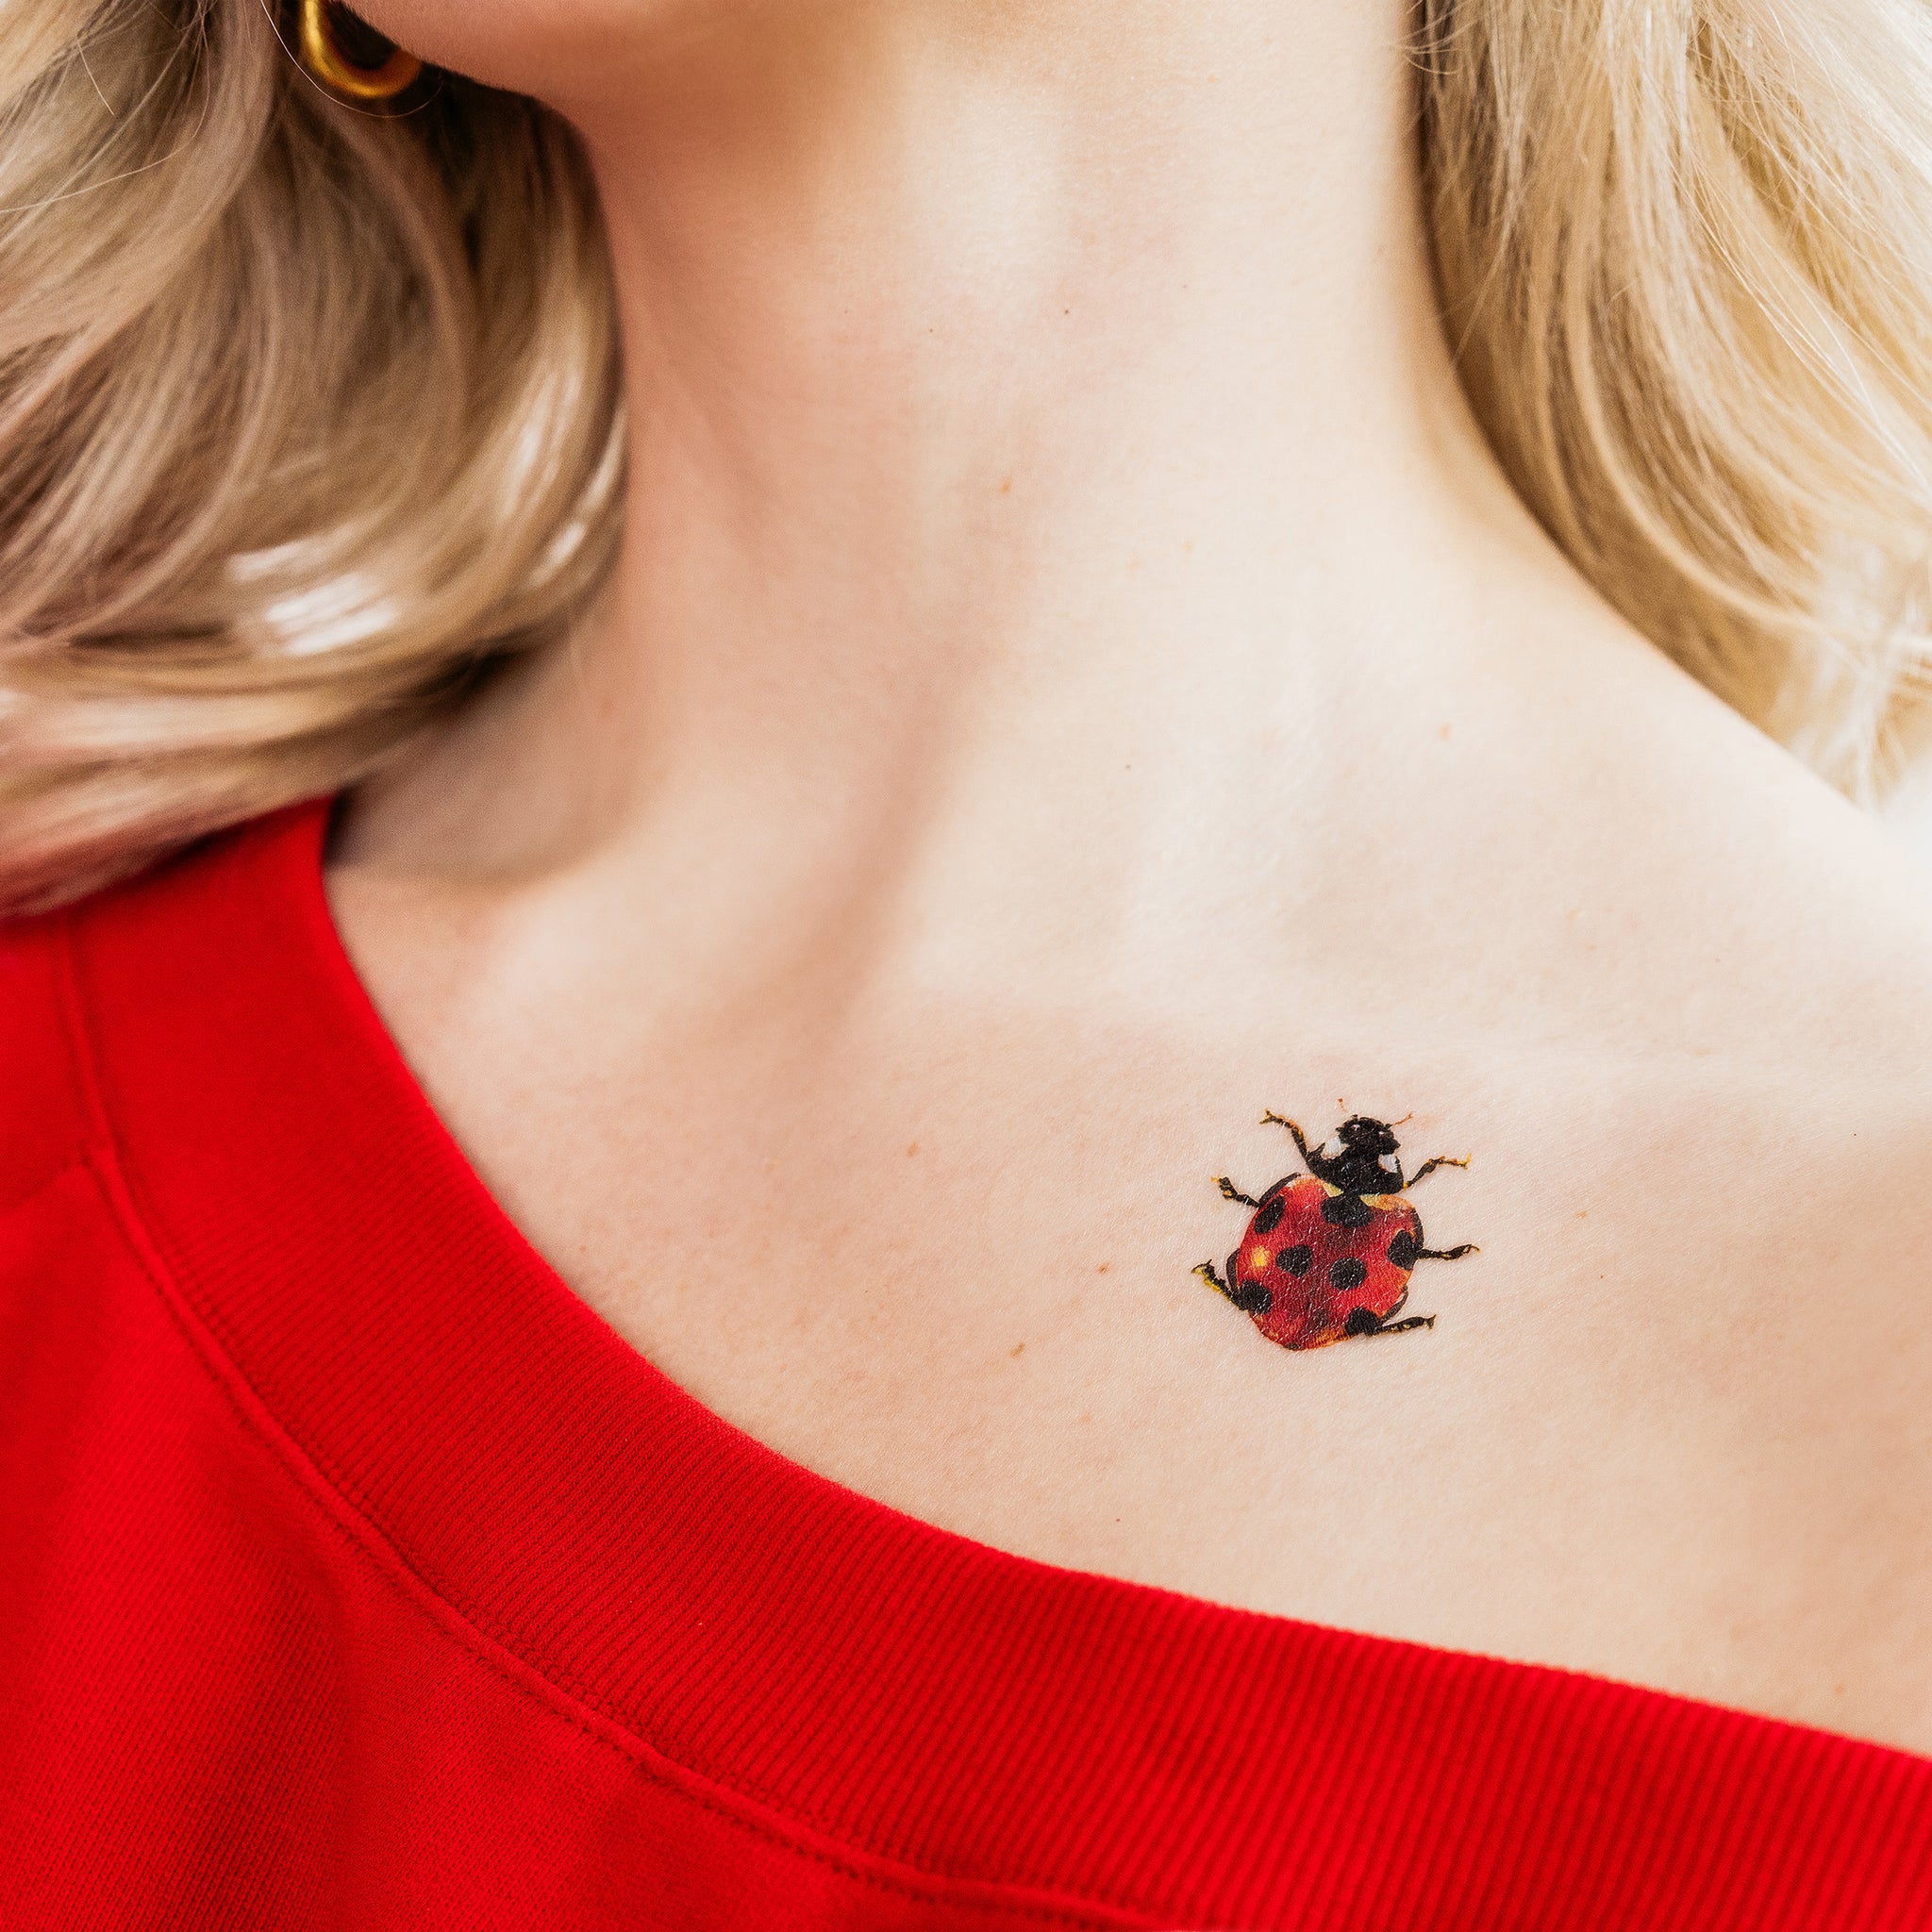 Ladybug Temporary Tattoo - Set of 3 – Little Tattoos